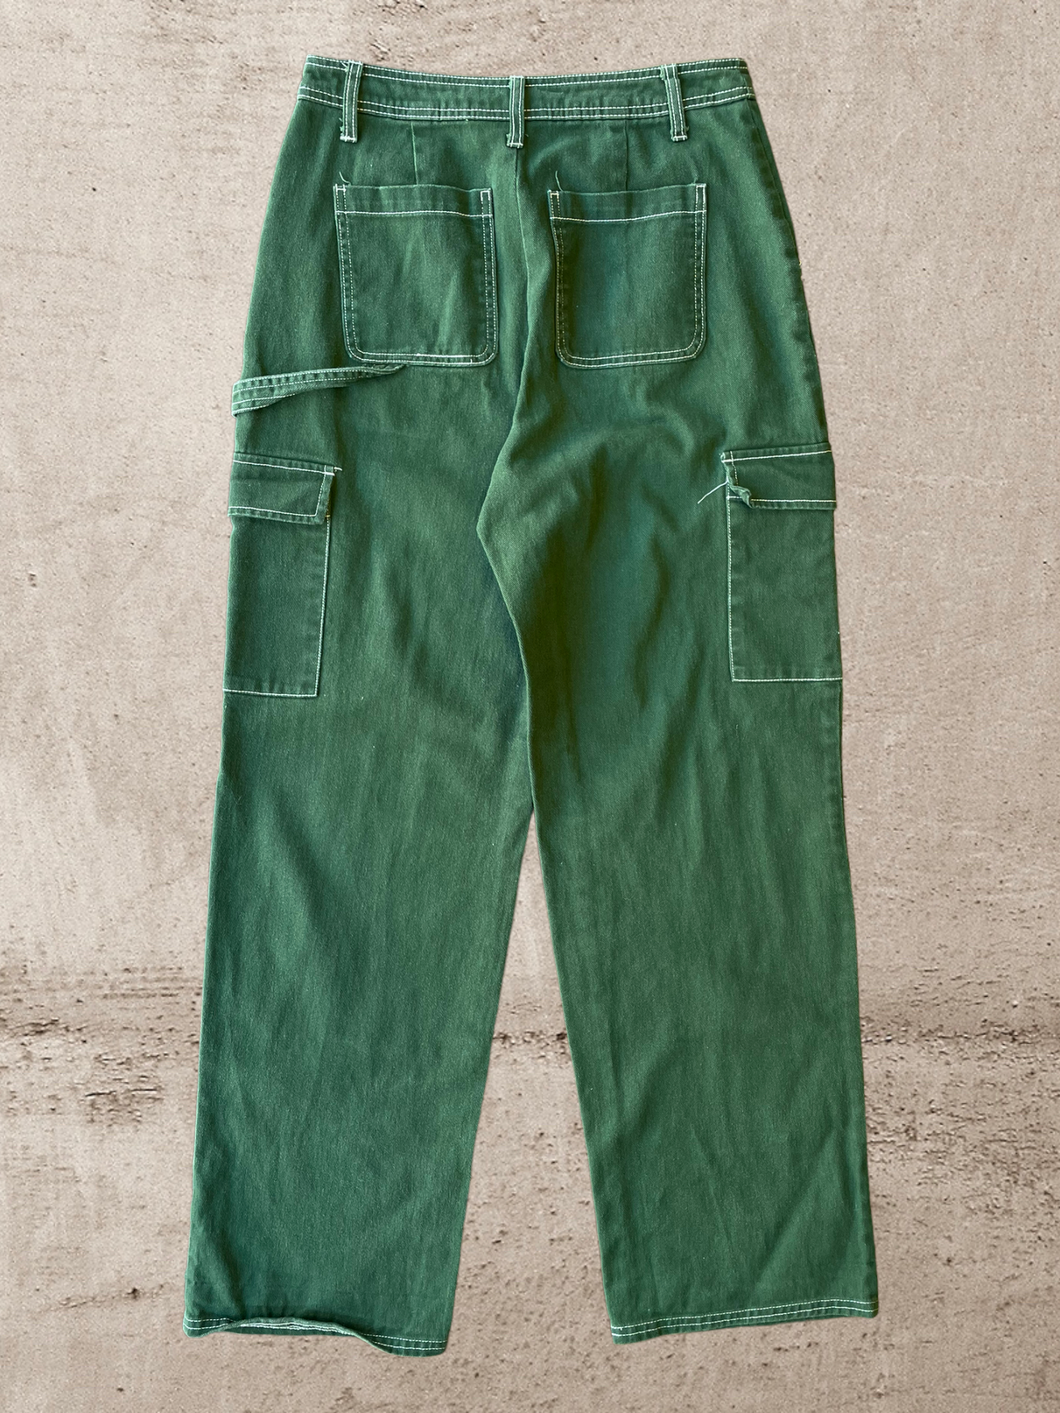 Sandy Liang Cargo Pants -30x31